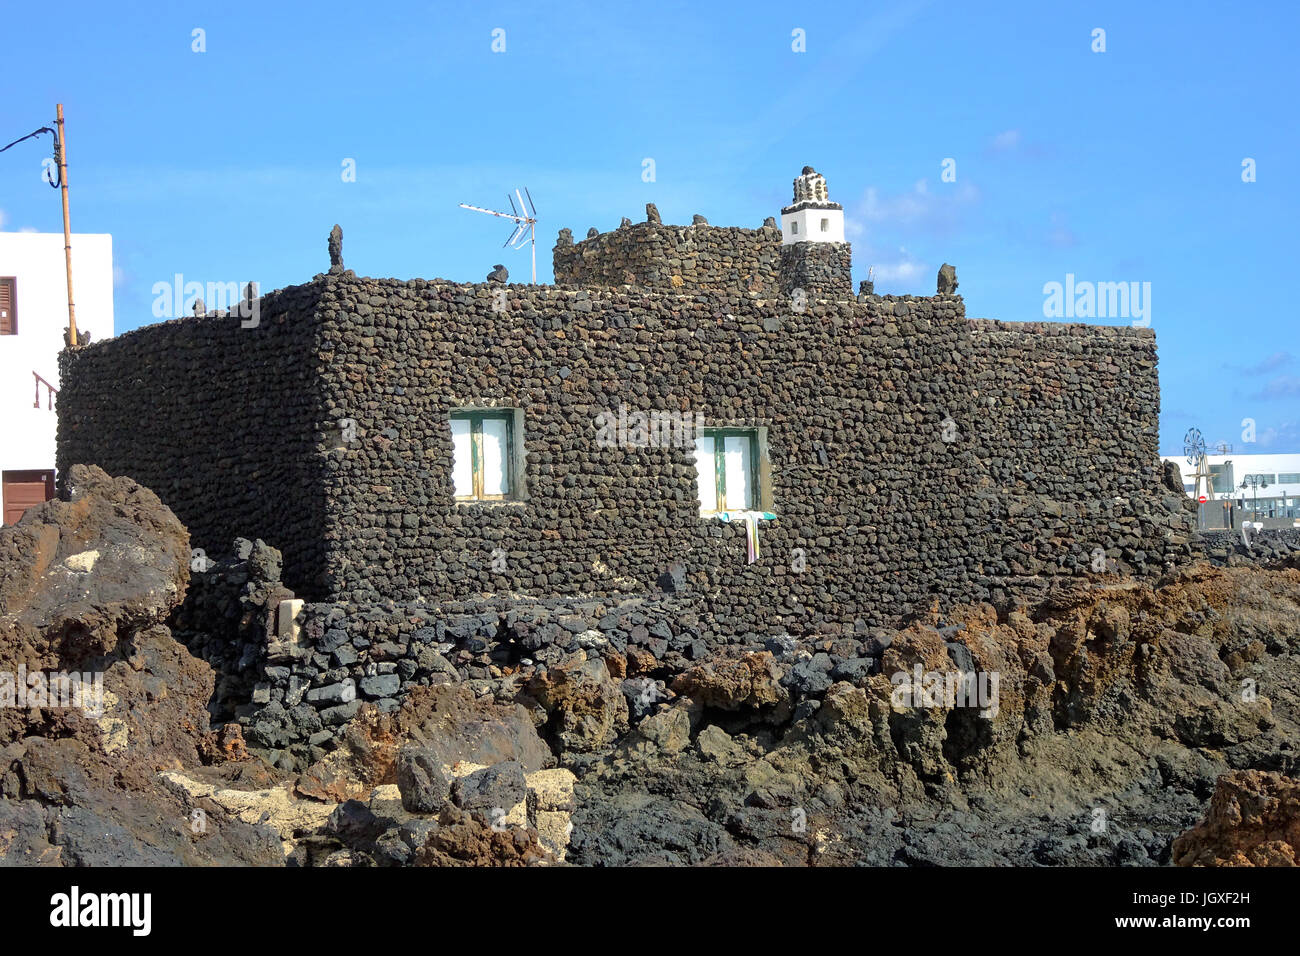 Aus lavasteinen gebautes Strandhaus in Punta Mujeres (uebersetzt Kap der Frauen), Fischerdorf im Norden von Lanzarote, Kanarische Inseln, Europa | Hou Stockfoto